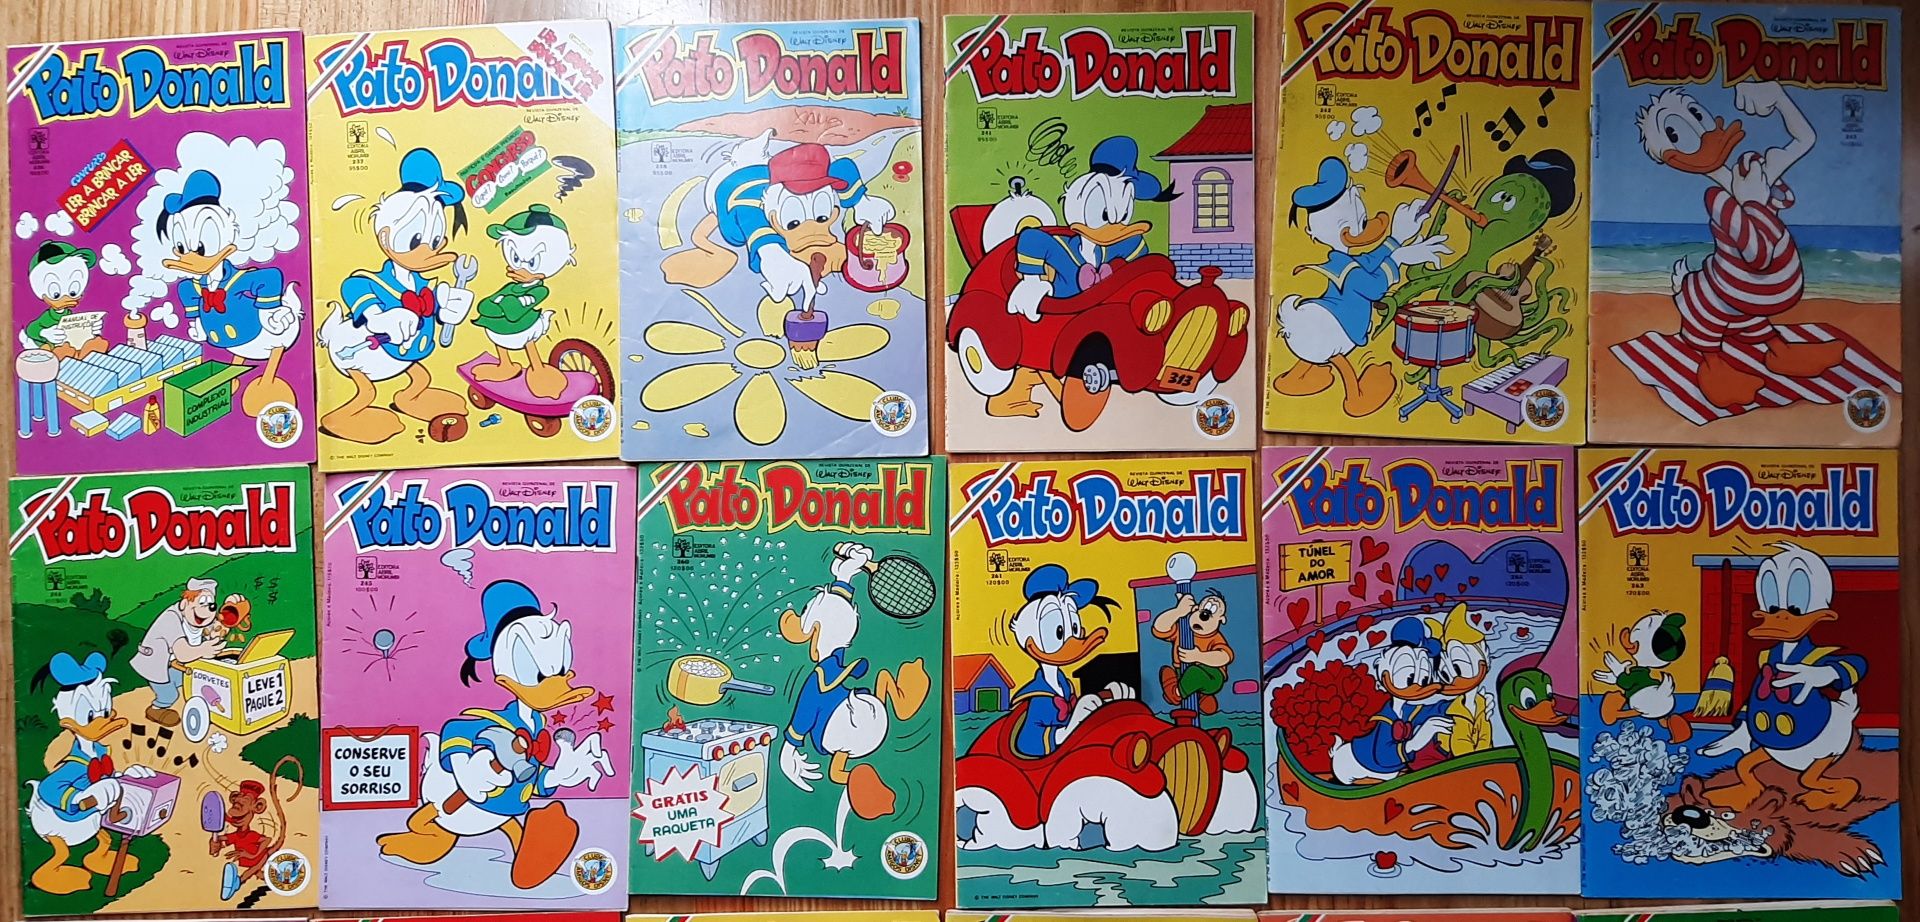 Revistas Disney Pato Donald novos números